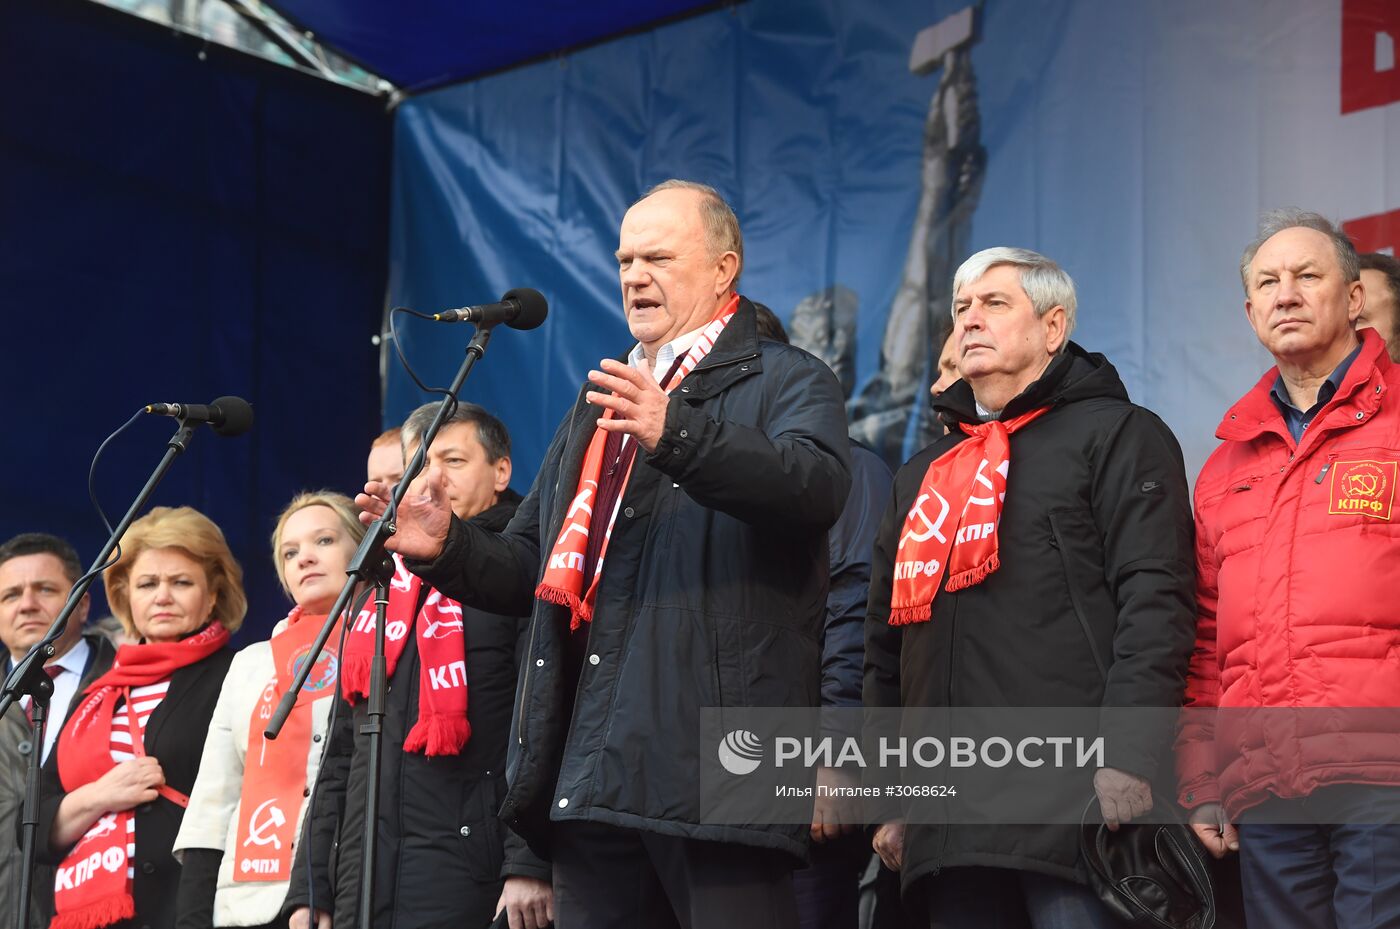 Митинг против ухудшения социального положения граждан России